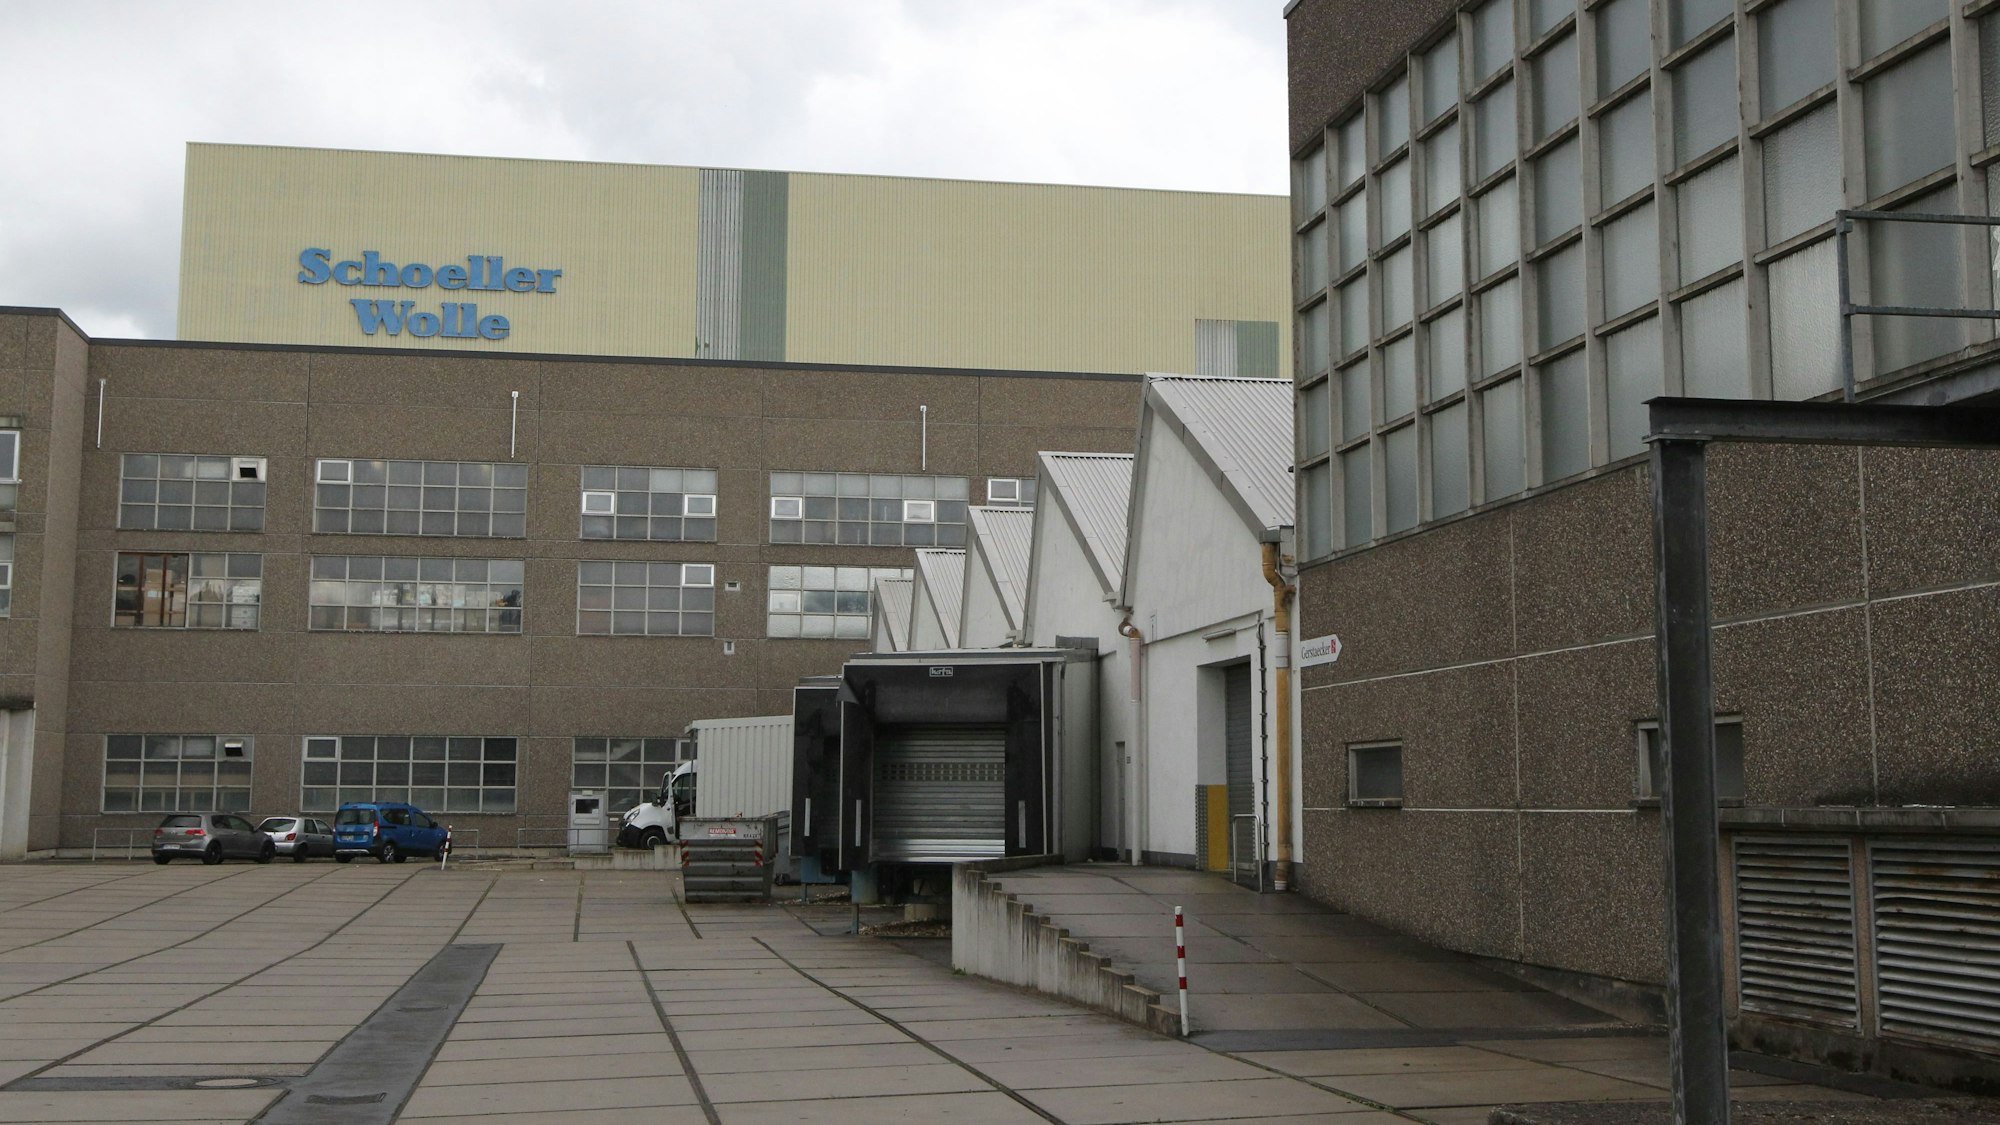 Mehrere Backsteingebäude eines Industriebaus, auf einem Gebäude steht der Schriftzug von Schoeller Wolle.